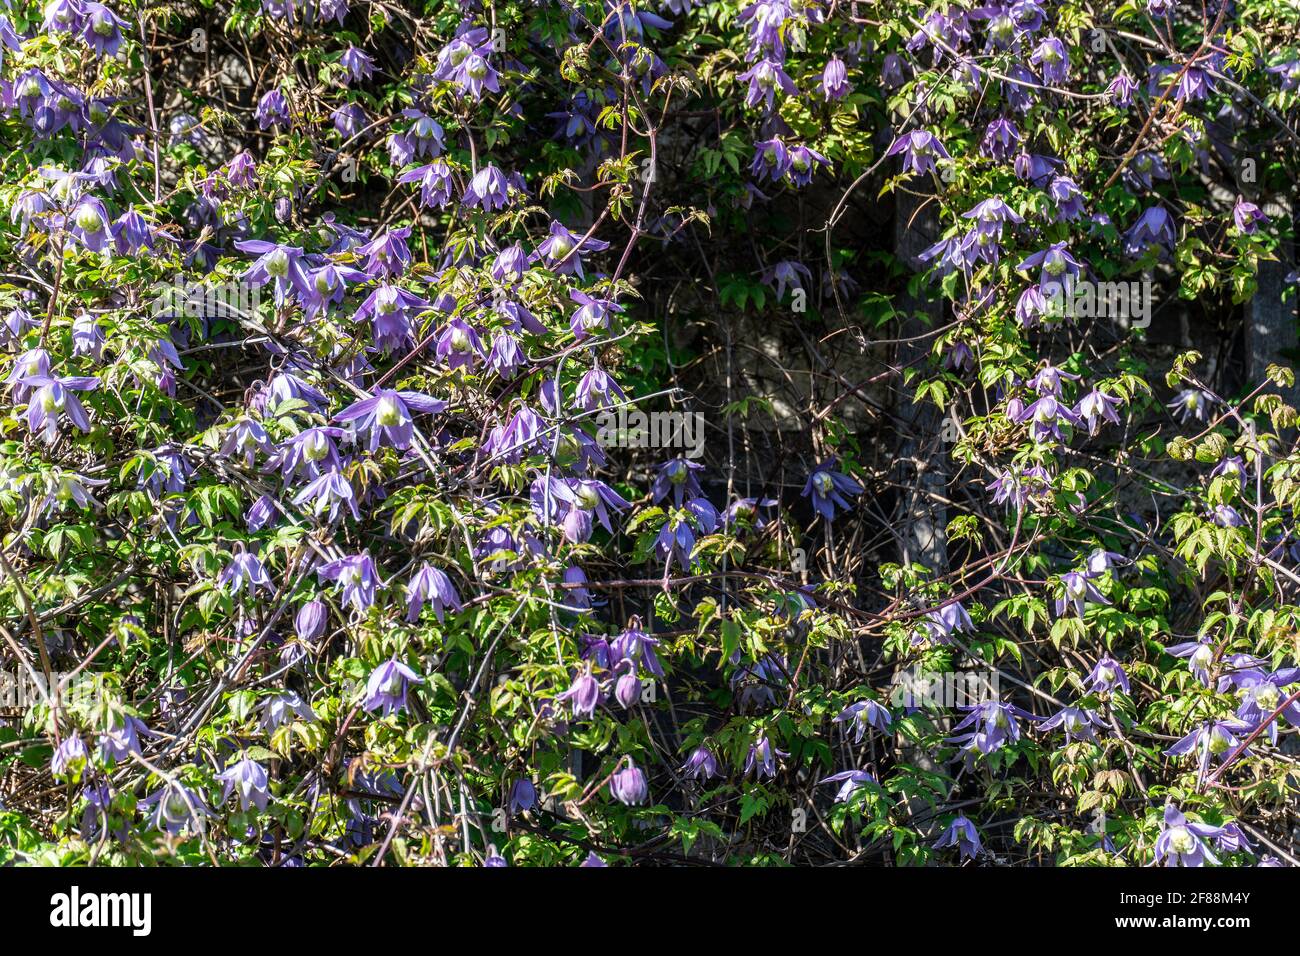 Clematis alpine. Les fleurs bleues en forme de cloche de l'Alpine Clematis, une plante grimpant qui fleurit en avril/mai chaque année. Banque D'Images